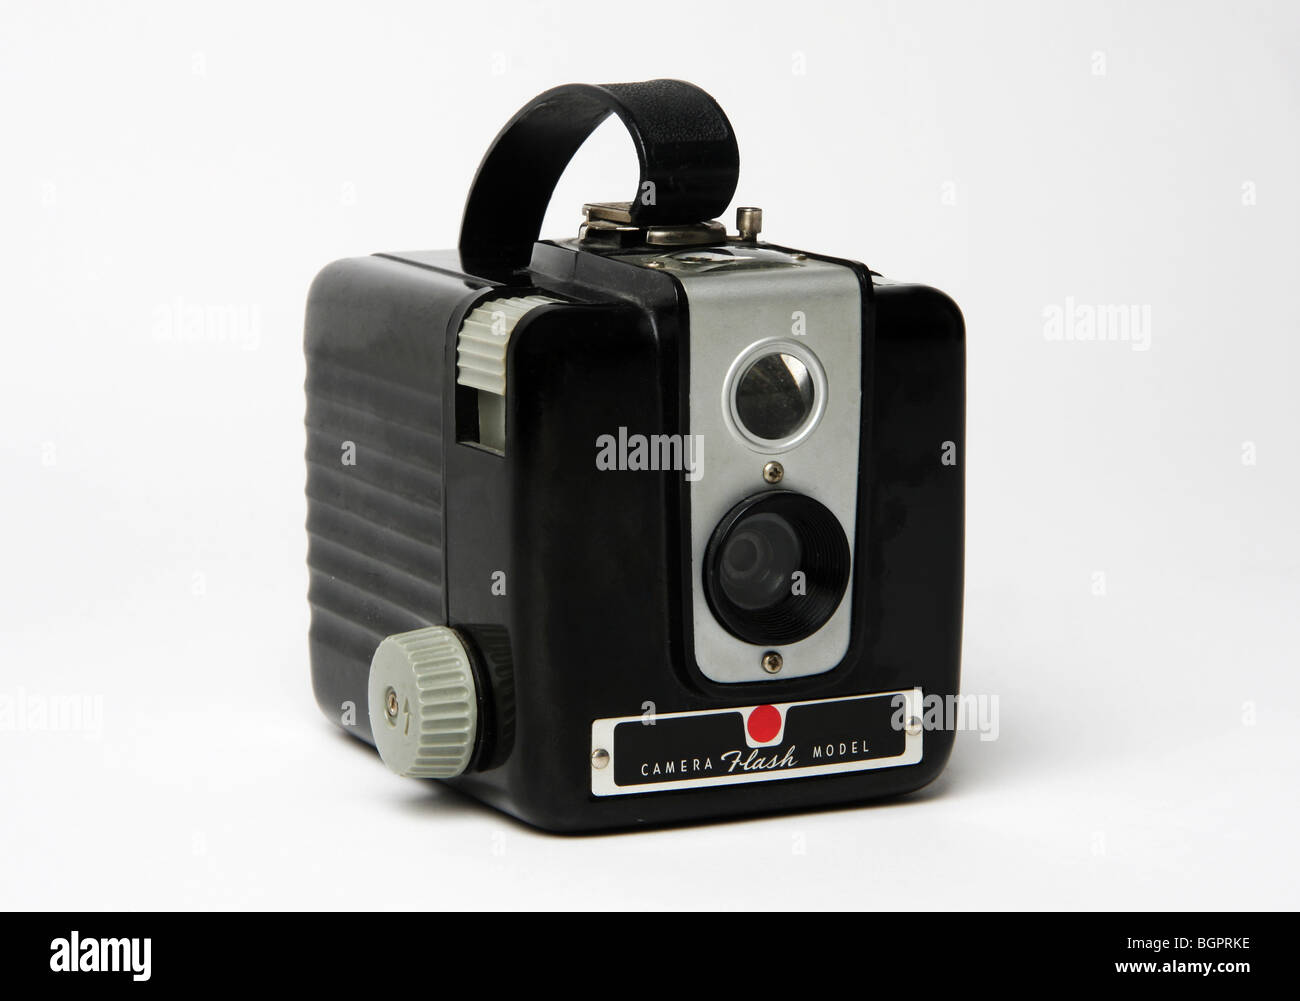 Un vieux classique de film de format moyen appareil photo. Très vintage / retro kit photographique. Banque D'Images